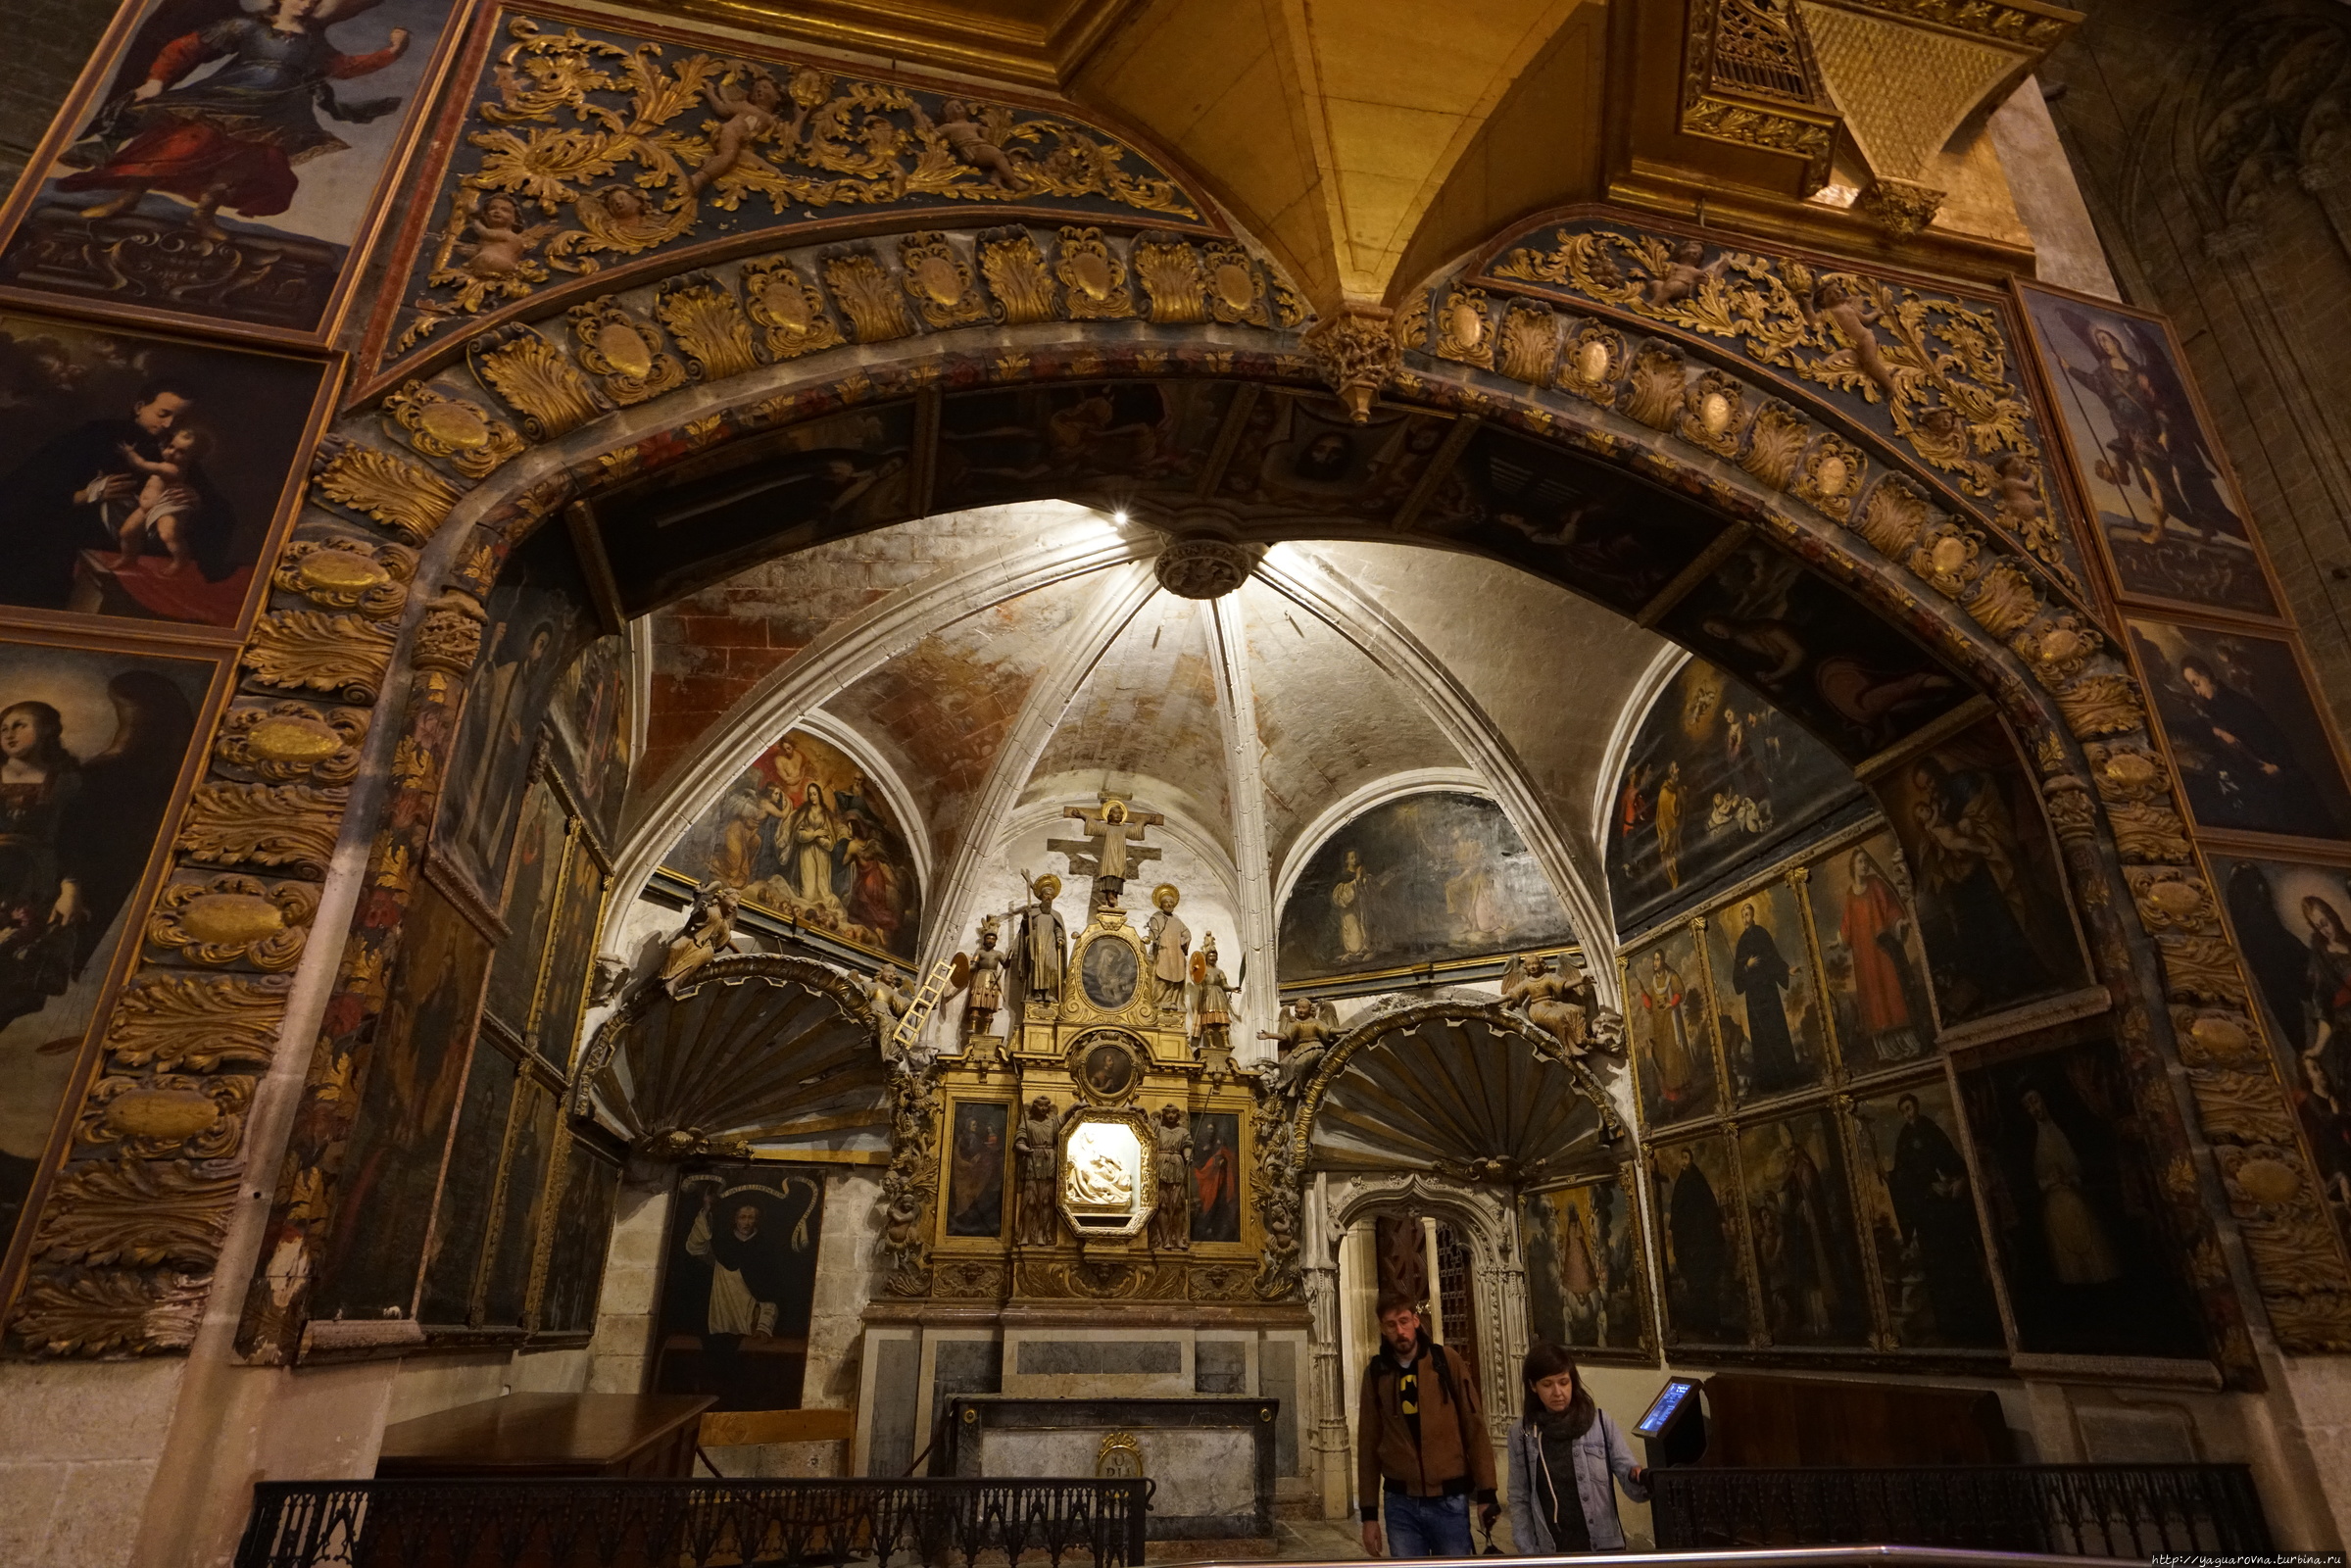 Кафедральный собор Пальма-де-Майорка, остров Майорка, Испания